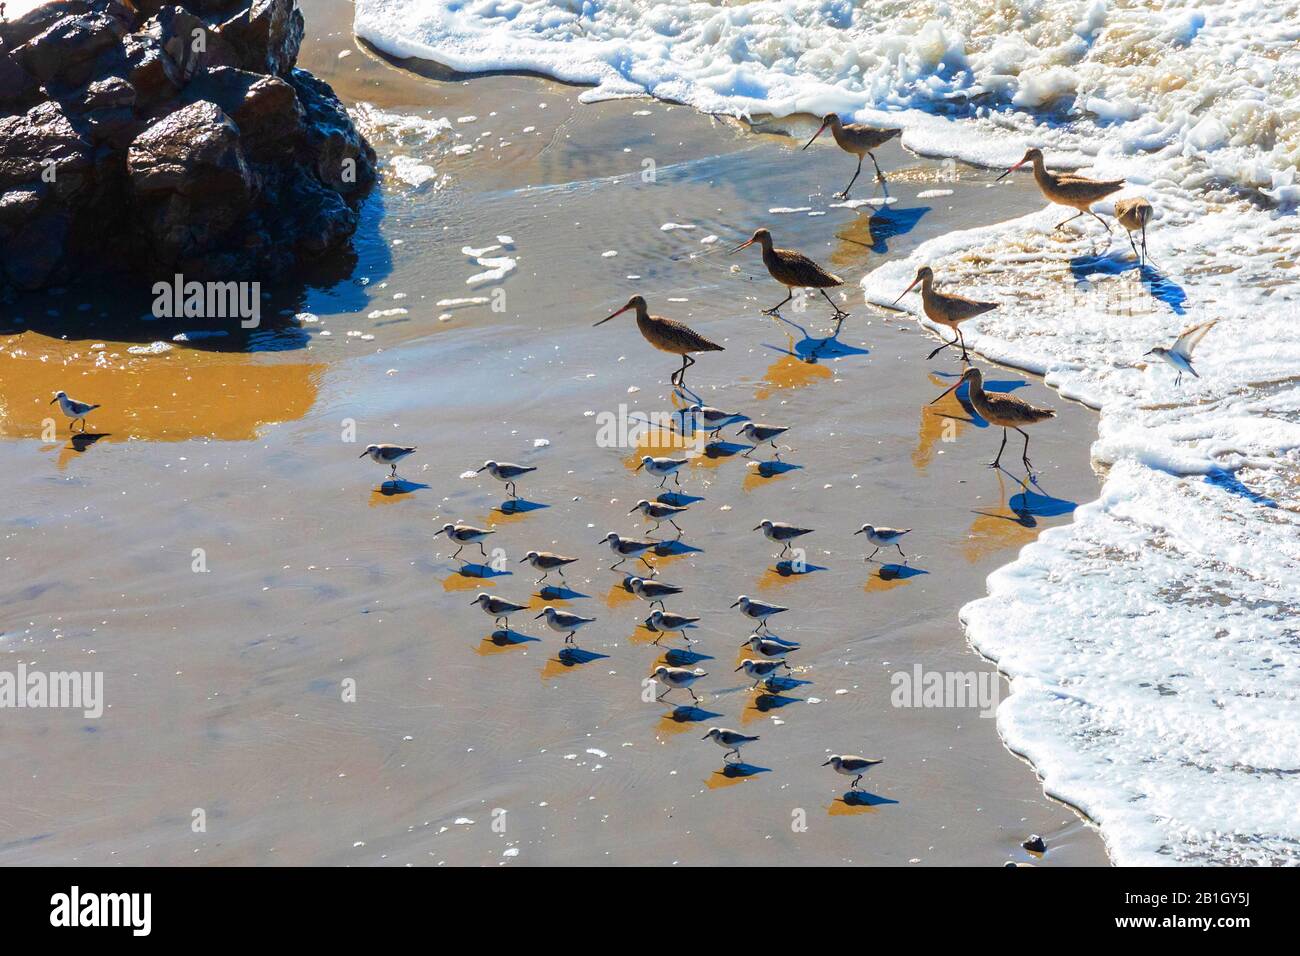 Le godwit marbré (Limosa fedoa) et le Sanderling, Calidris alba, s'éloignant d'une vague sur la plage de sable, États-Unis, Californie, Crystal Cove State Park Banque D'Images